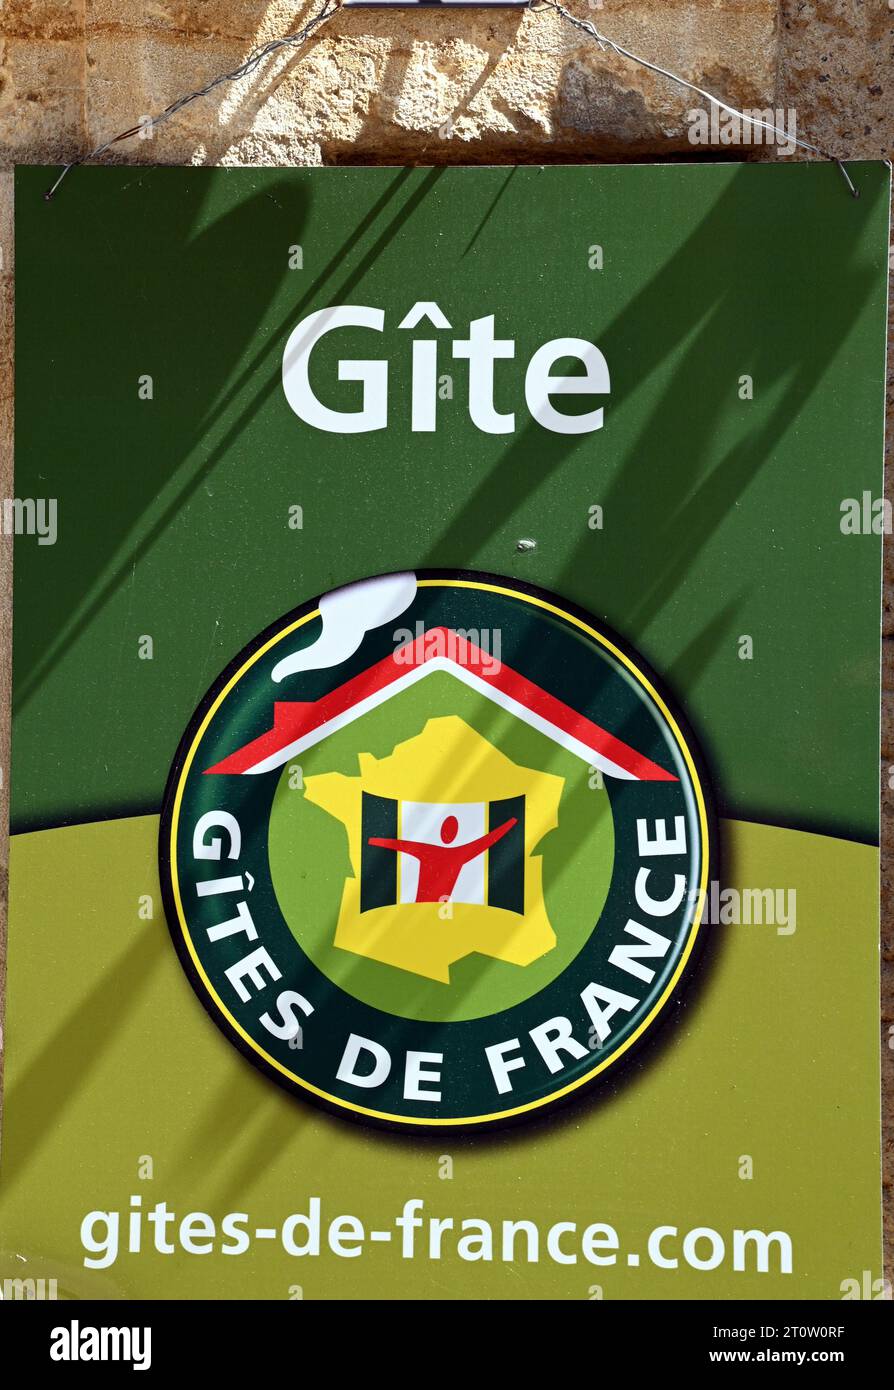 Le célèbre Gite de France signe, une indication d'une location de vacances, dans la ville de Villefranche-du-Périgord, Dordogne, France. Banque D'Images